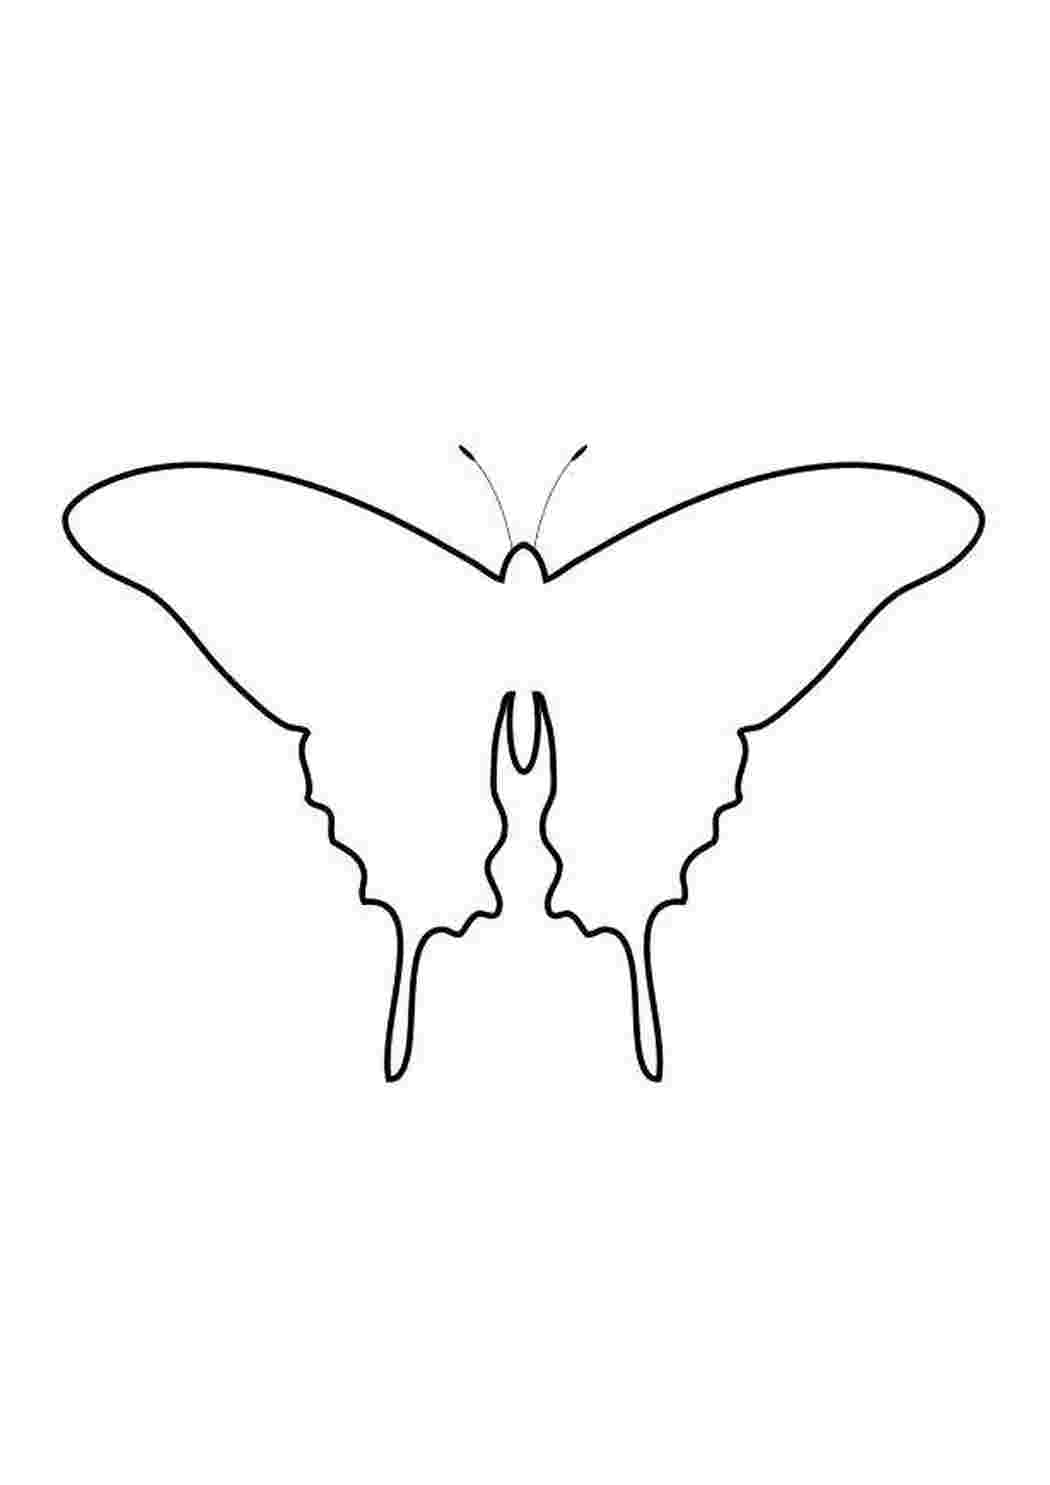 Раскраски Контур бабочки контуры для вырезания бабочек Контур, бабочка